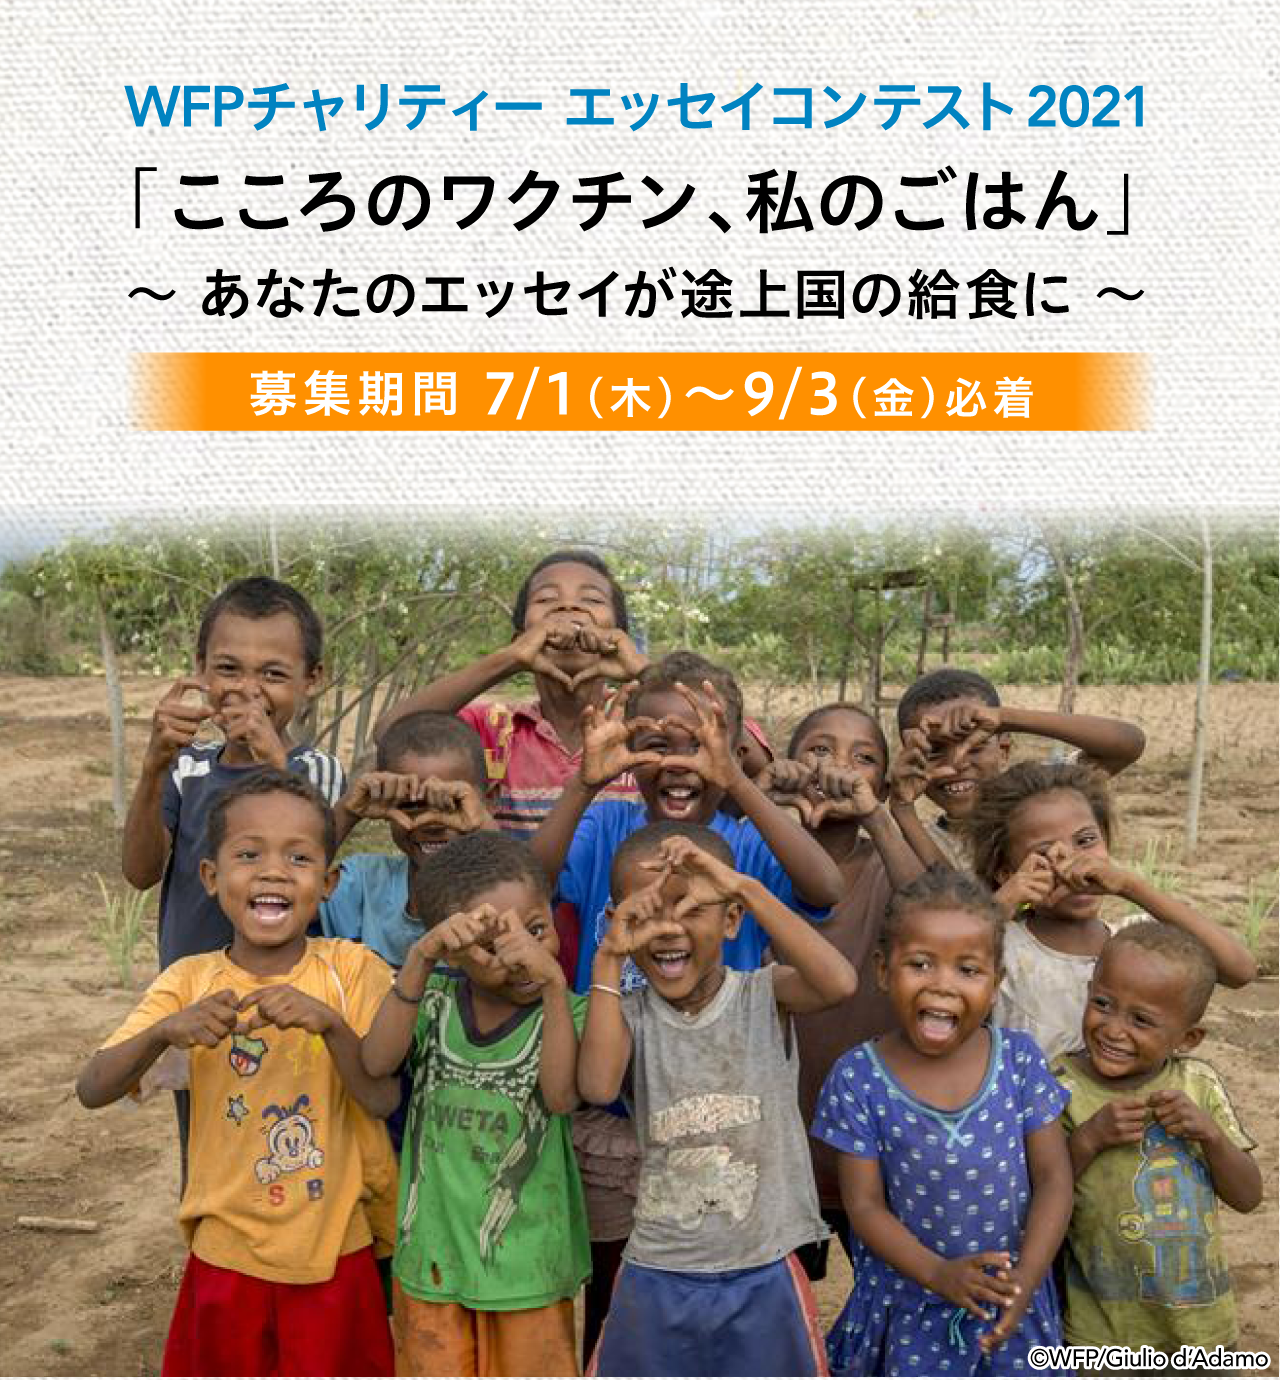 WFPチャリティー エッセイコンテスト2021 「こころのワクチン、私のごはん」